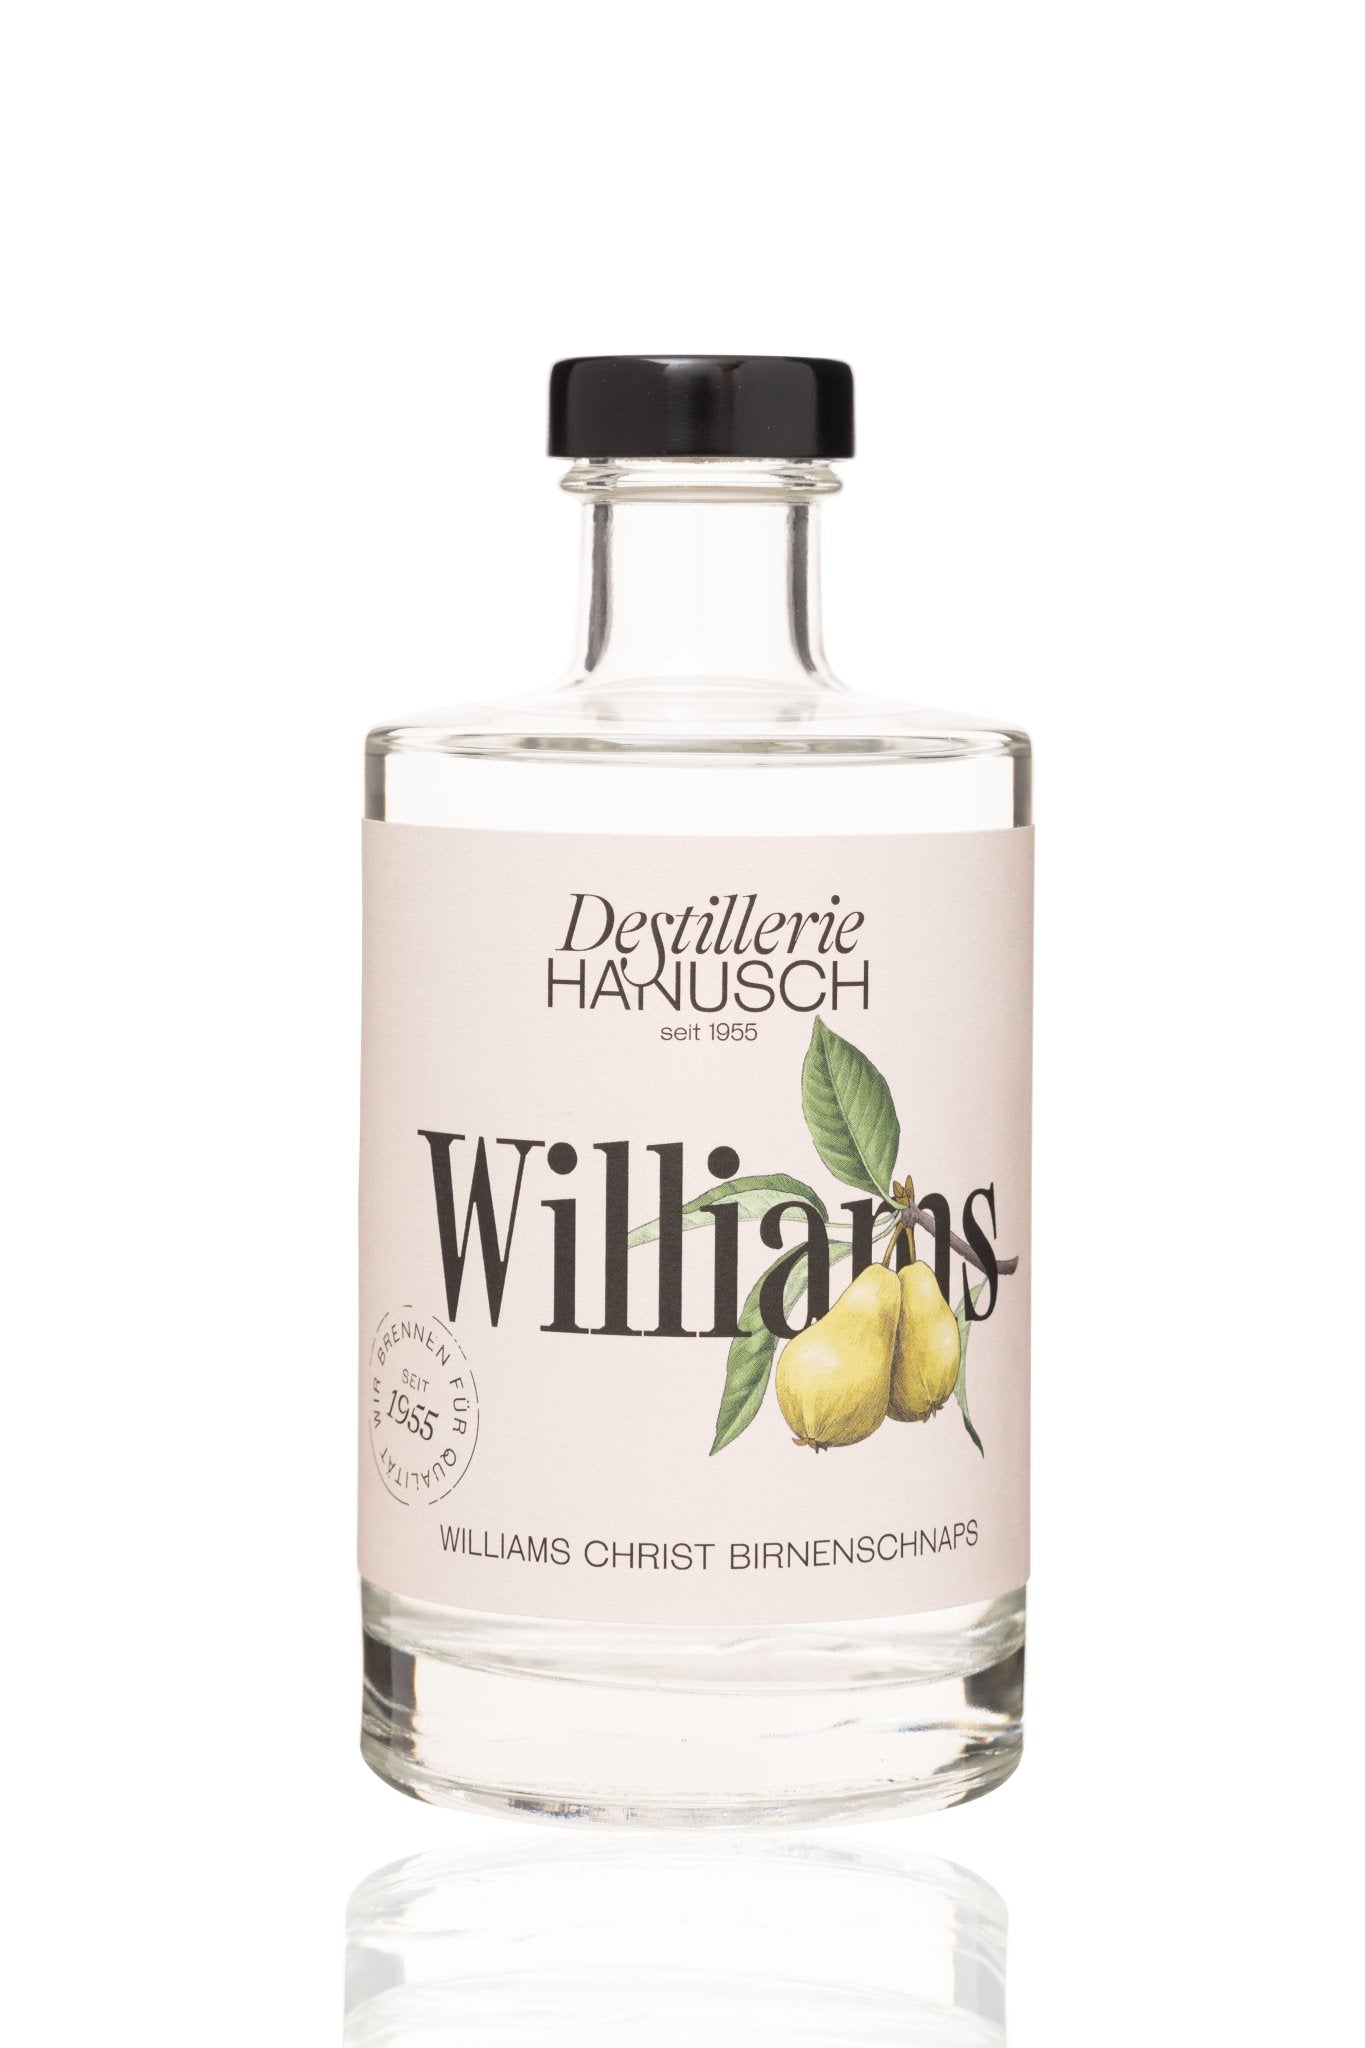 Williams-Christ-Birnenschnaps